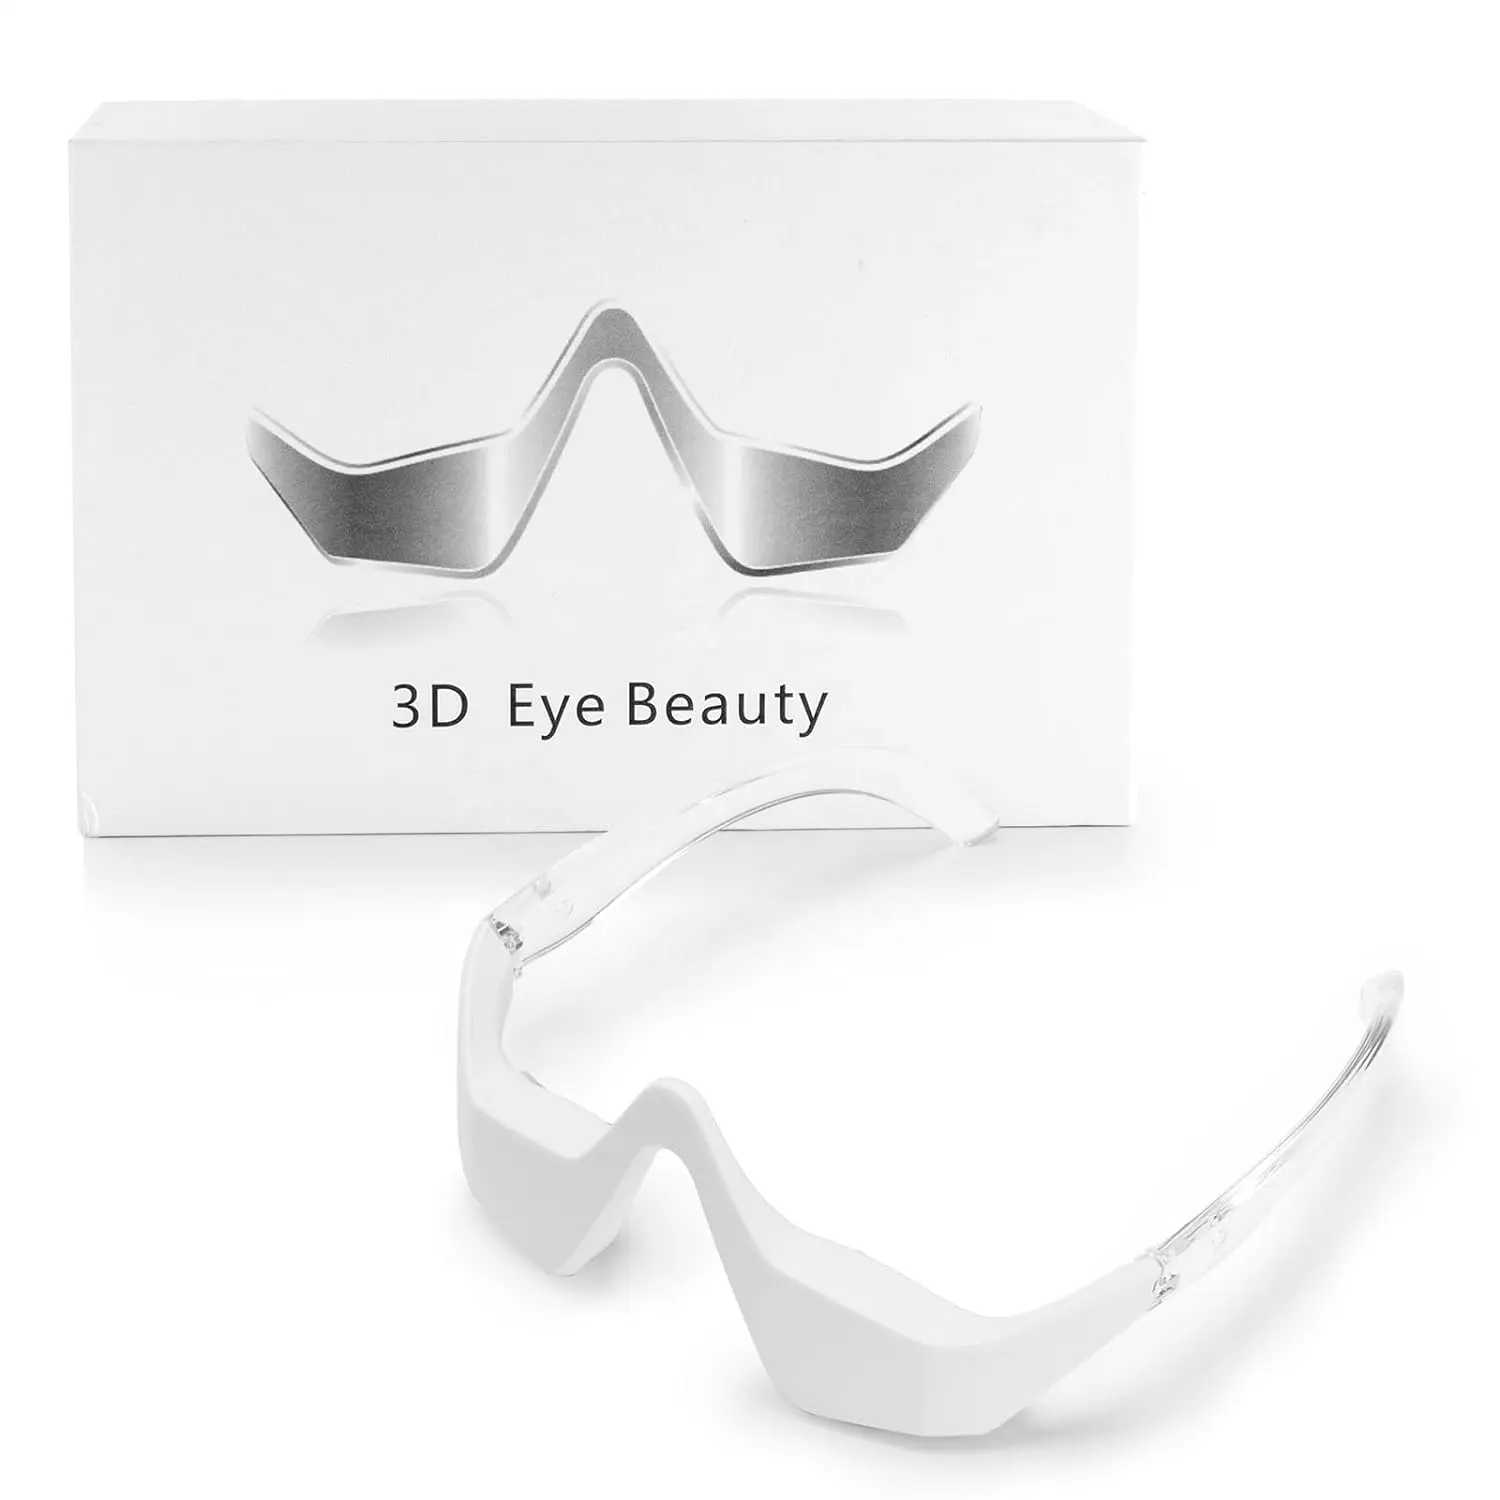 Masajeador de belleza para ojos 3D para ojeras, bolsas para los ojos, masajeador de reparación profunda, relajación, tensión ocular, uso doméstico